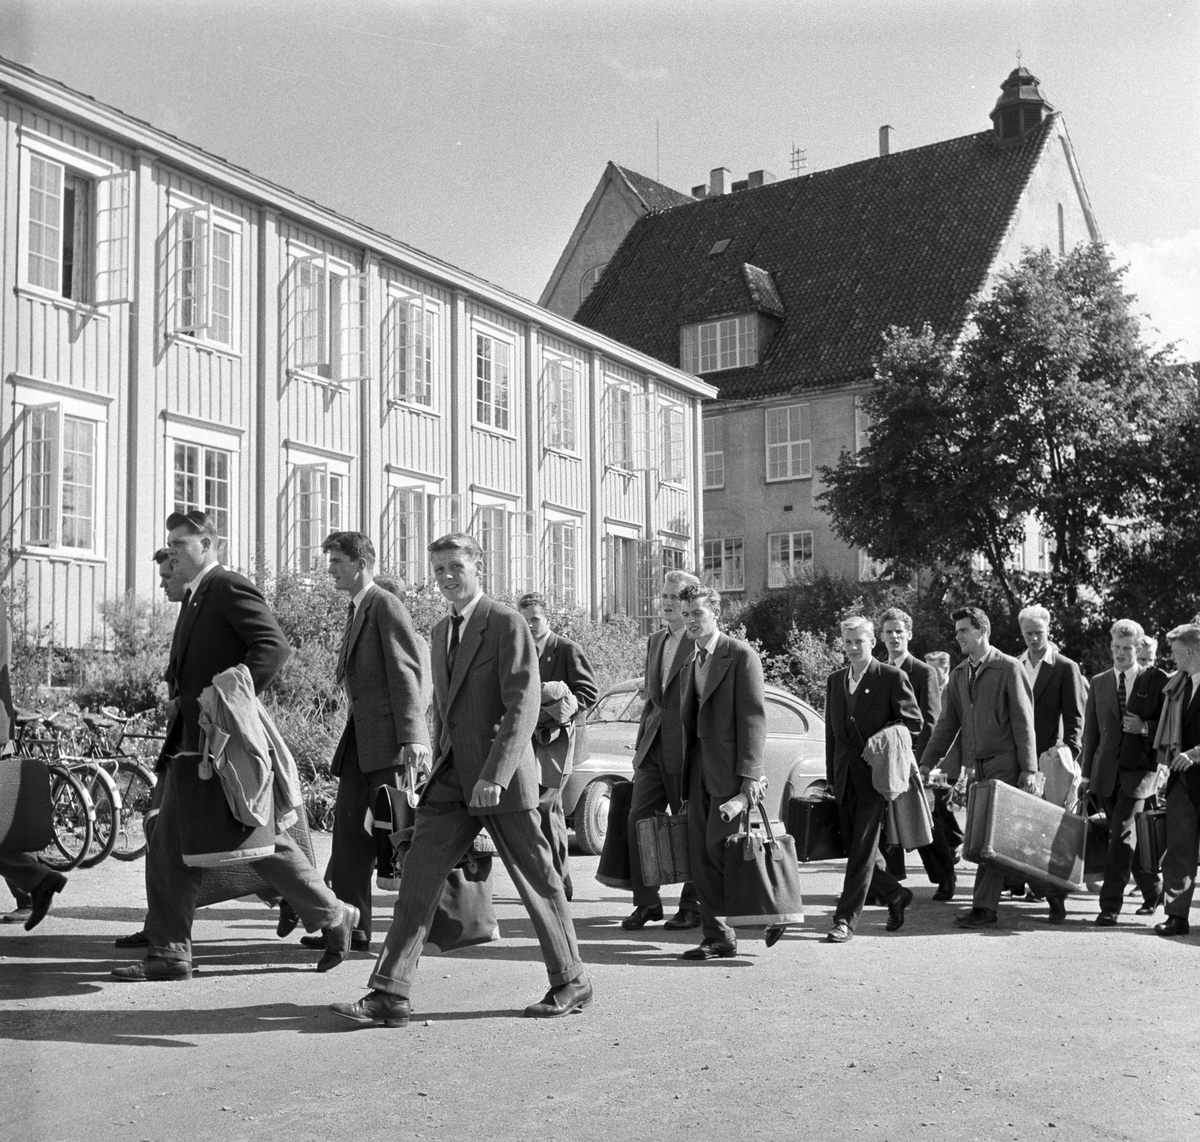 Serie. Nordisk juniorlandskamp i friidrett i Trondheim, Sør-Trøndelag.  Fotografert 1955.